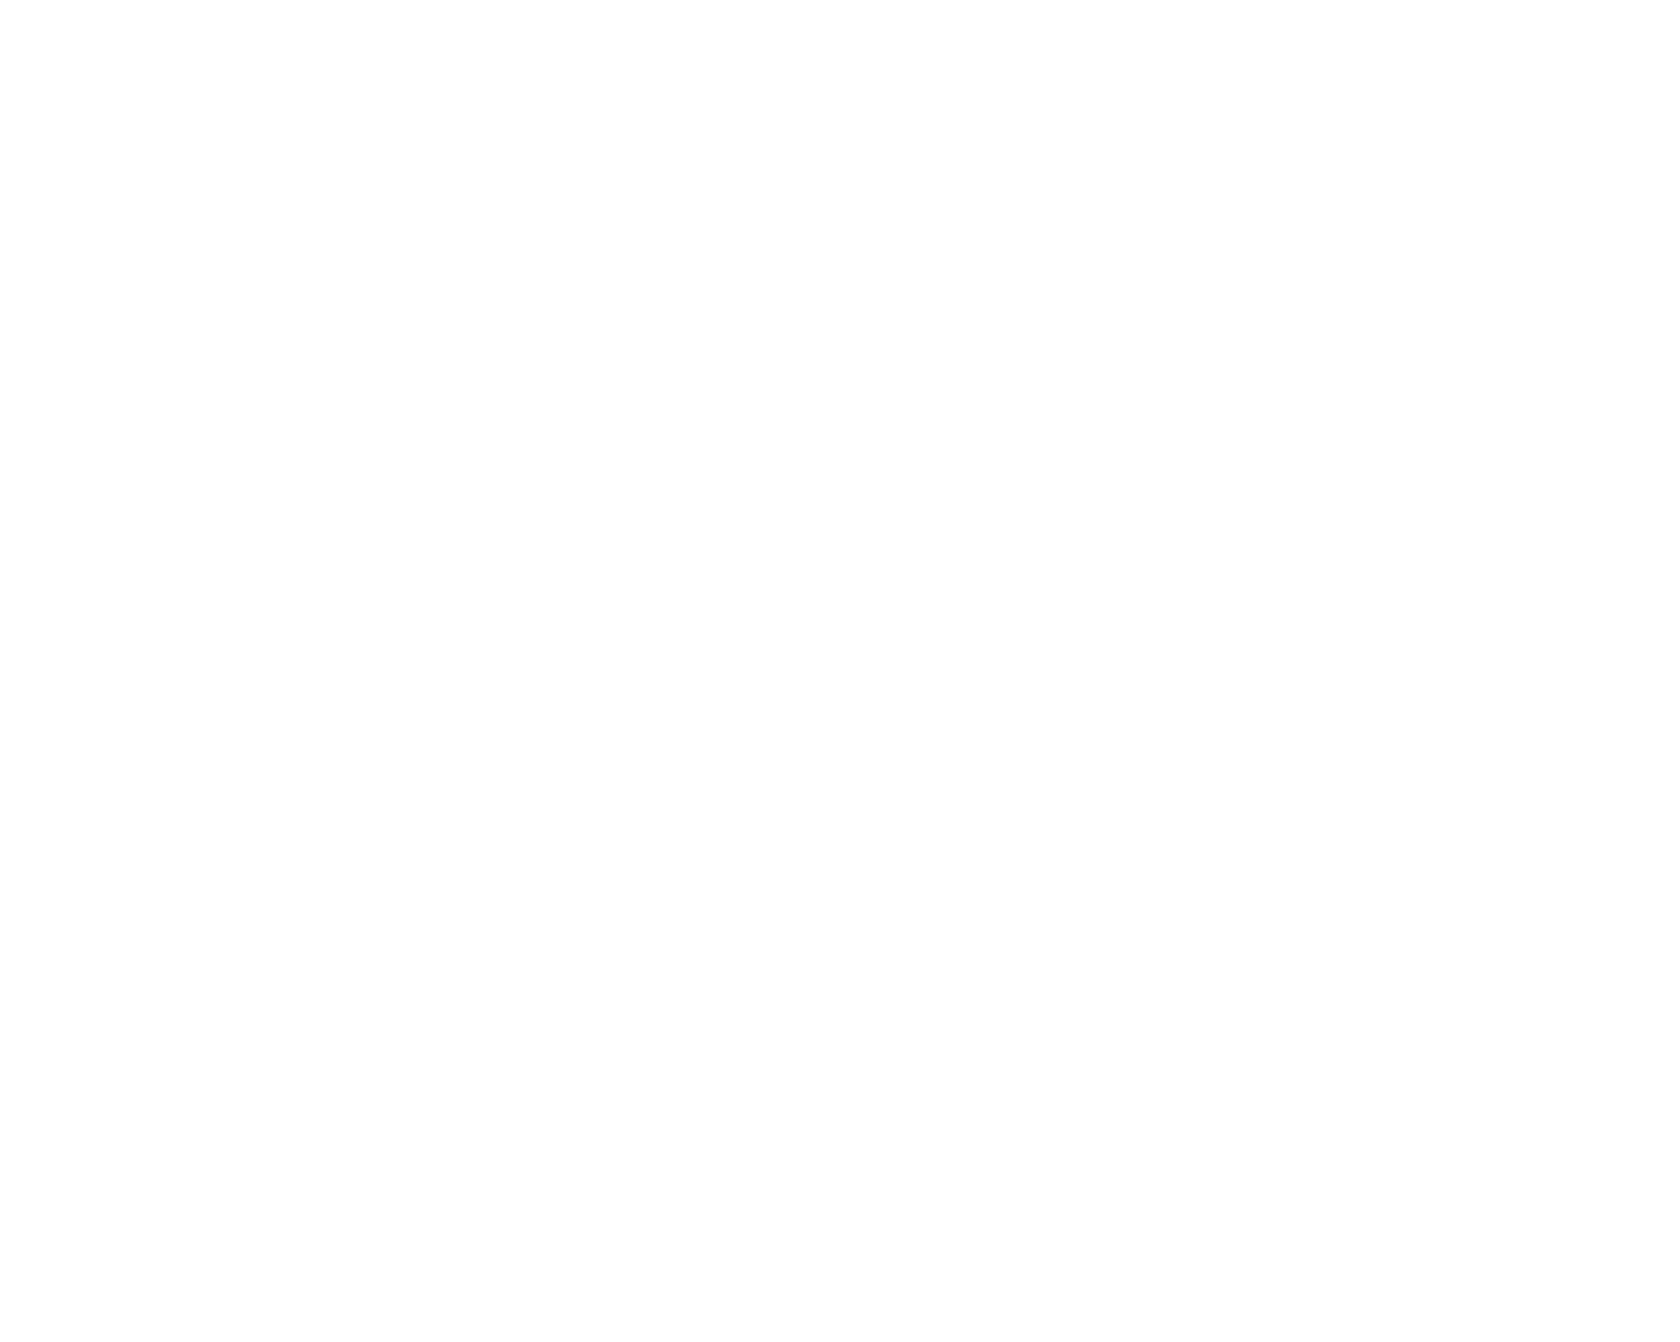 Серебряные медали Суперфинала Континентального Кубка IIHL гомельчанам вручает Почётный президент Международной федерации хоккея Мирослав Шубрт, 2004 г.